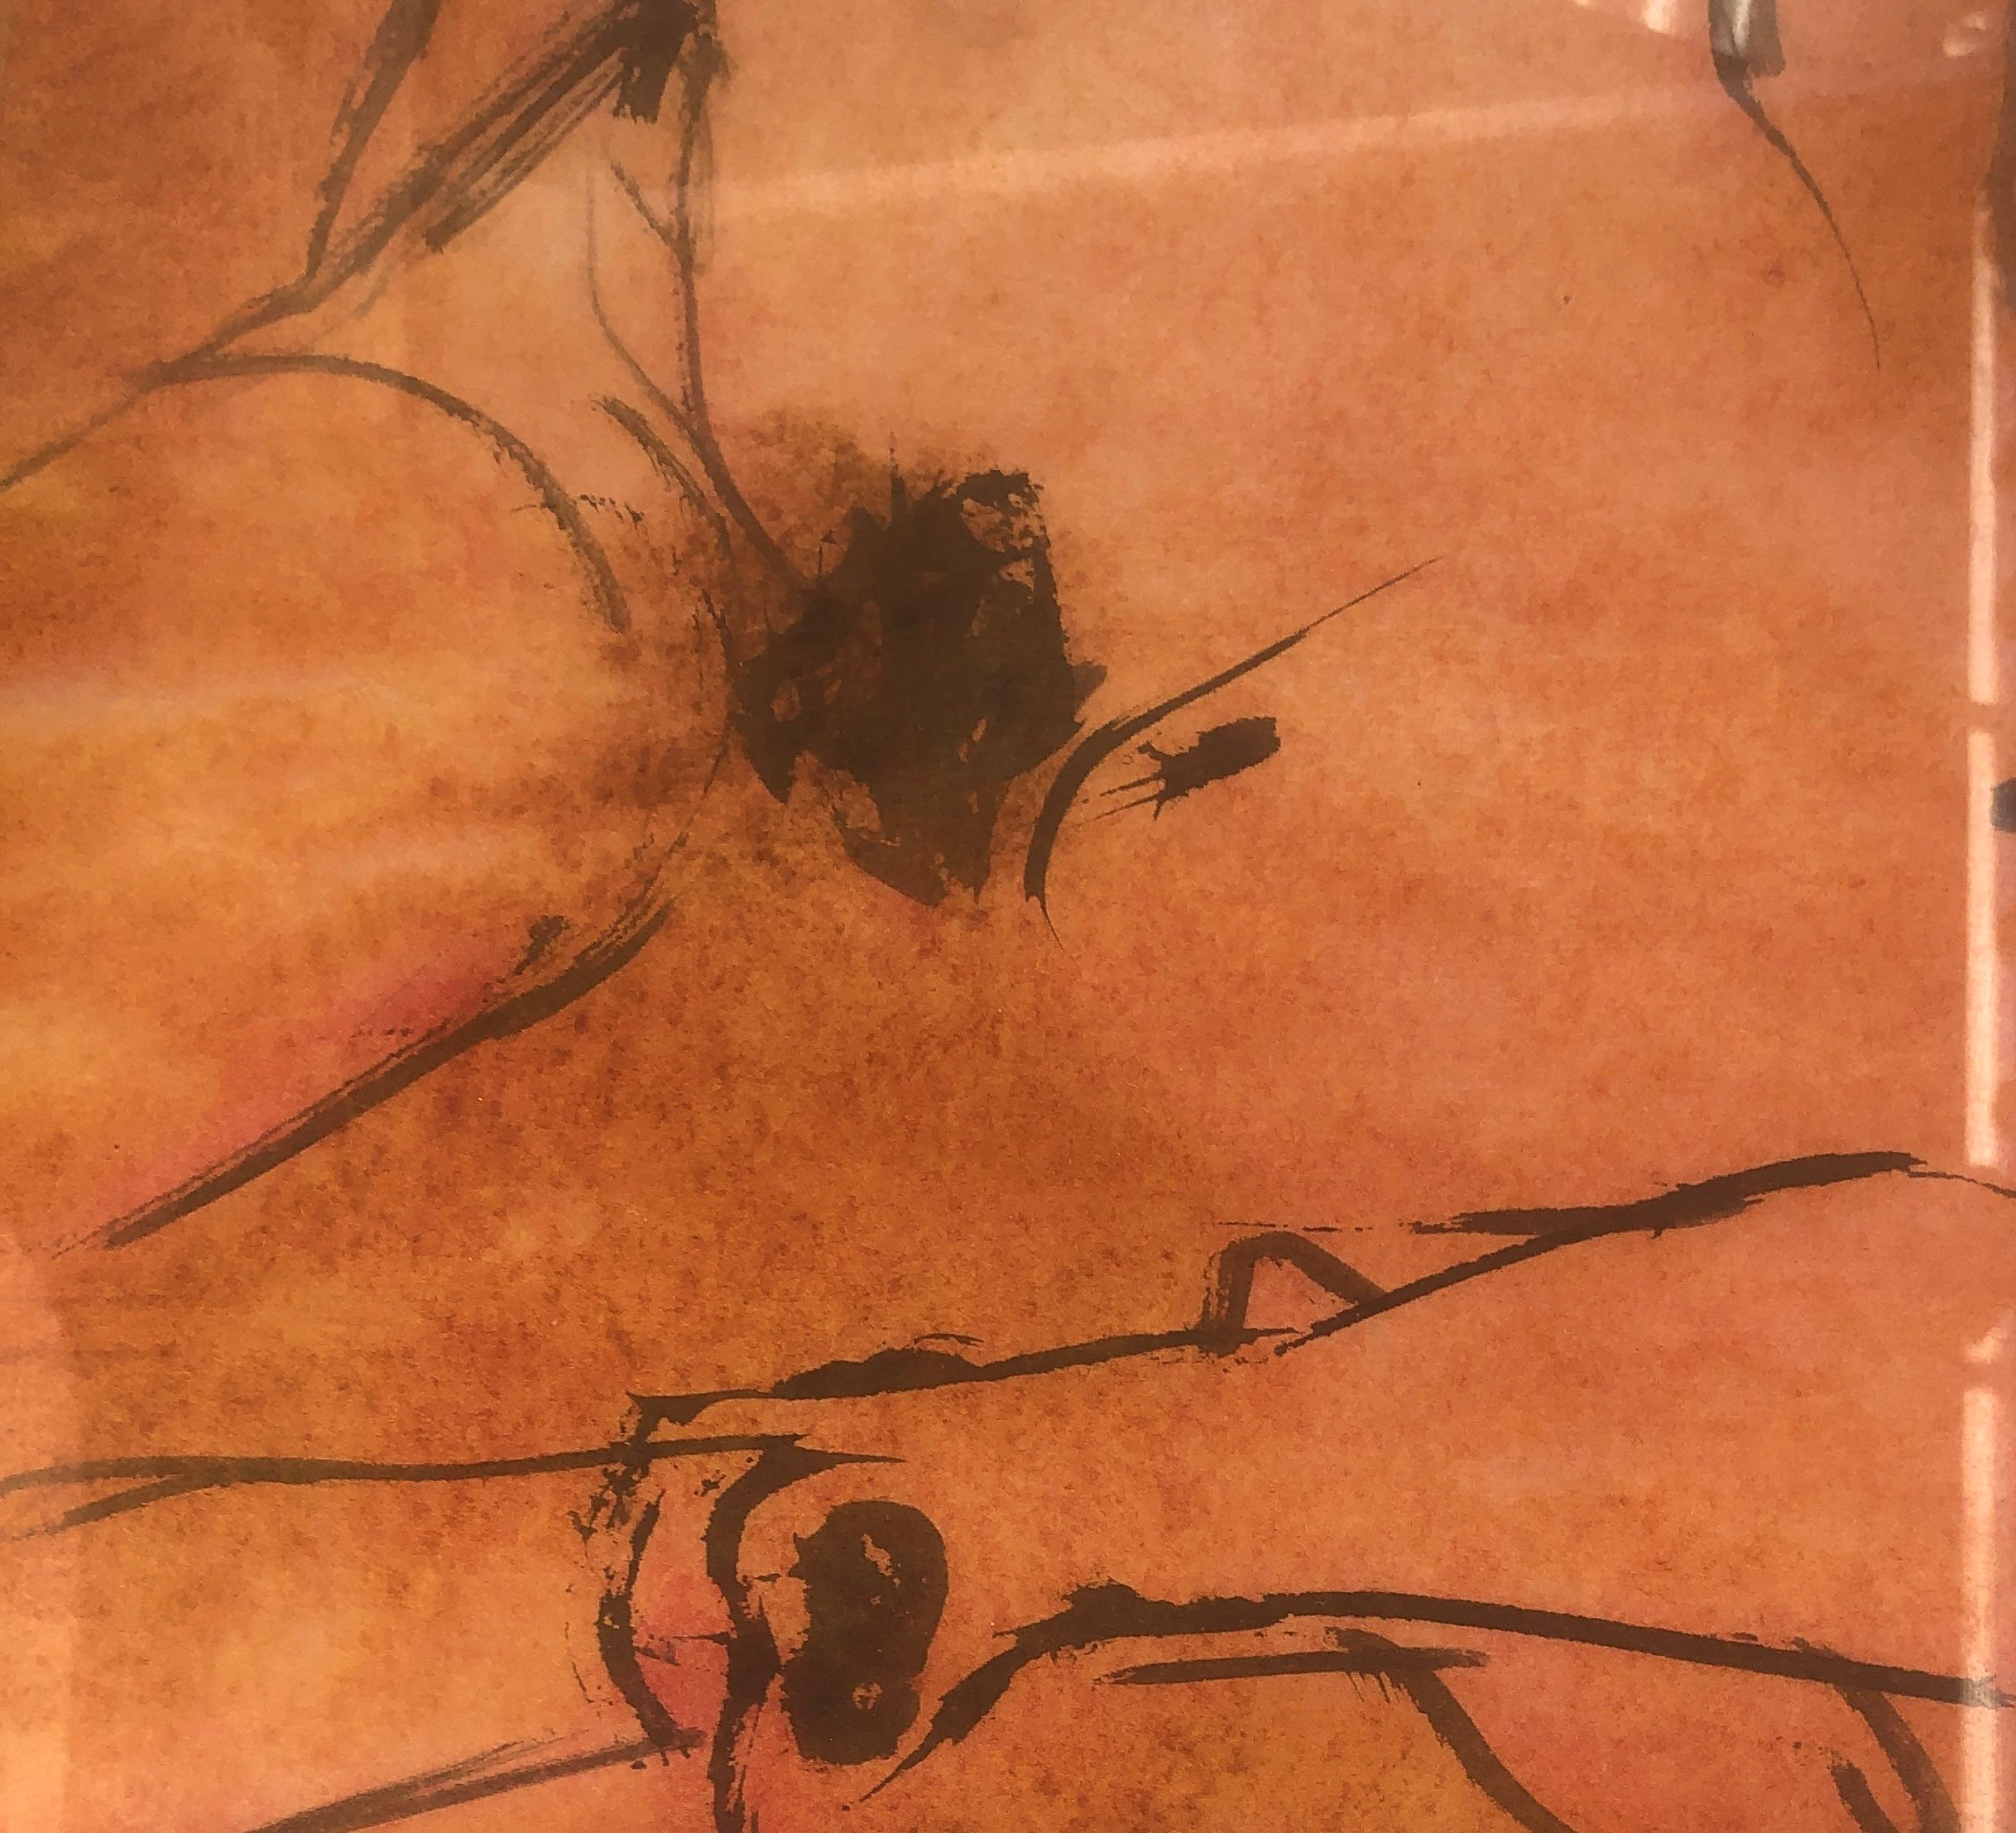 Perico Pastor (1953) - Nackte Frau - Mischtechnik
Papierformat 33x24 cm.
Rahmenmaße 57x48 cm.

Perico Pastor (La Seu d'Urgell, 1953) ist ein katalanischer Maler, Designer und Illustrator. Er studierte 1976 in Barcelona und wanderte dann nach New